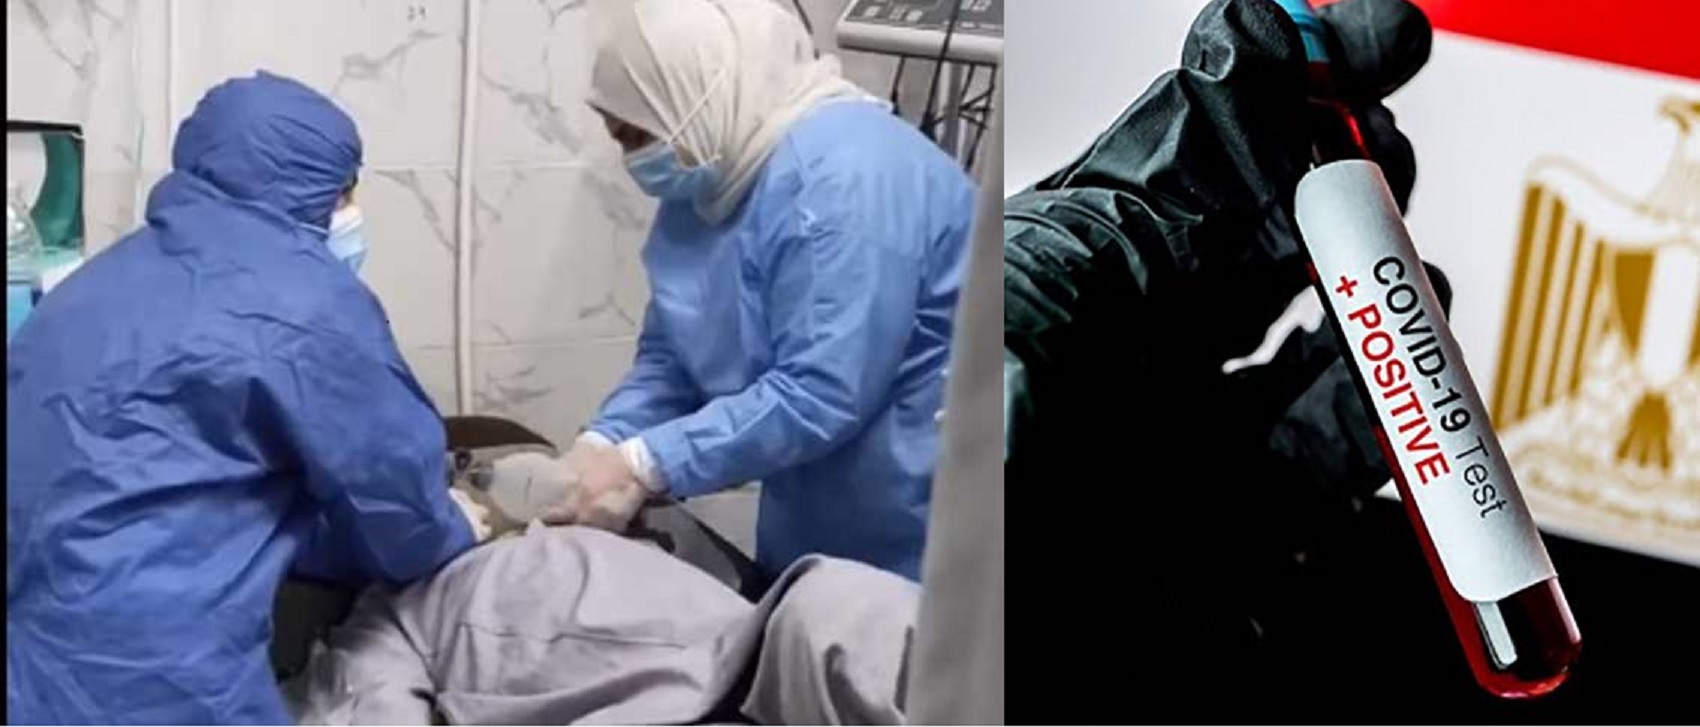 بالفيديو.. تفاصيل 50 ثانية من الذعر والرعب داخل مستشفى الحسينية وأول رد من وزارة الصحة